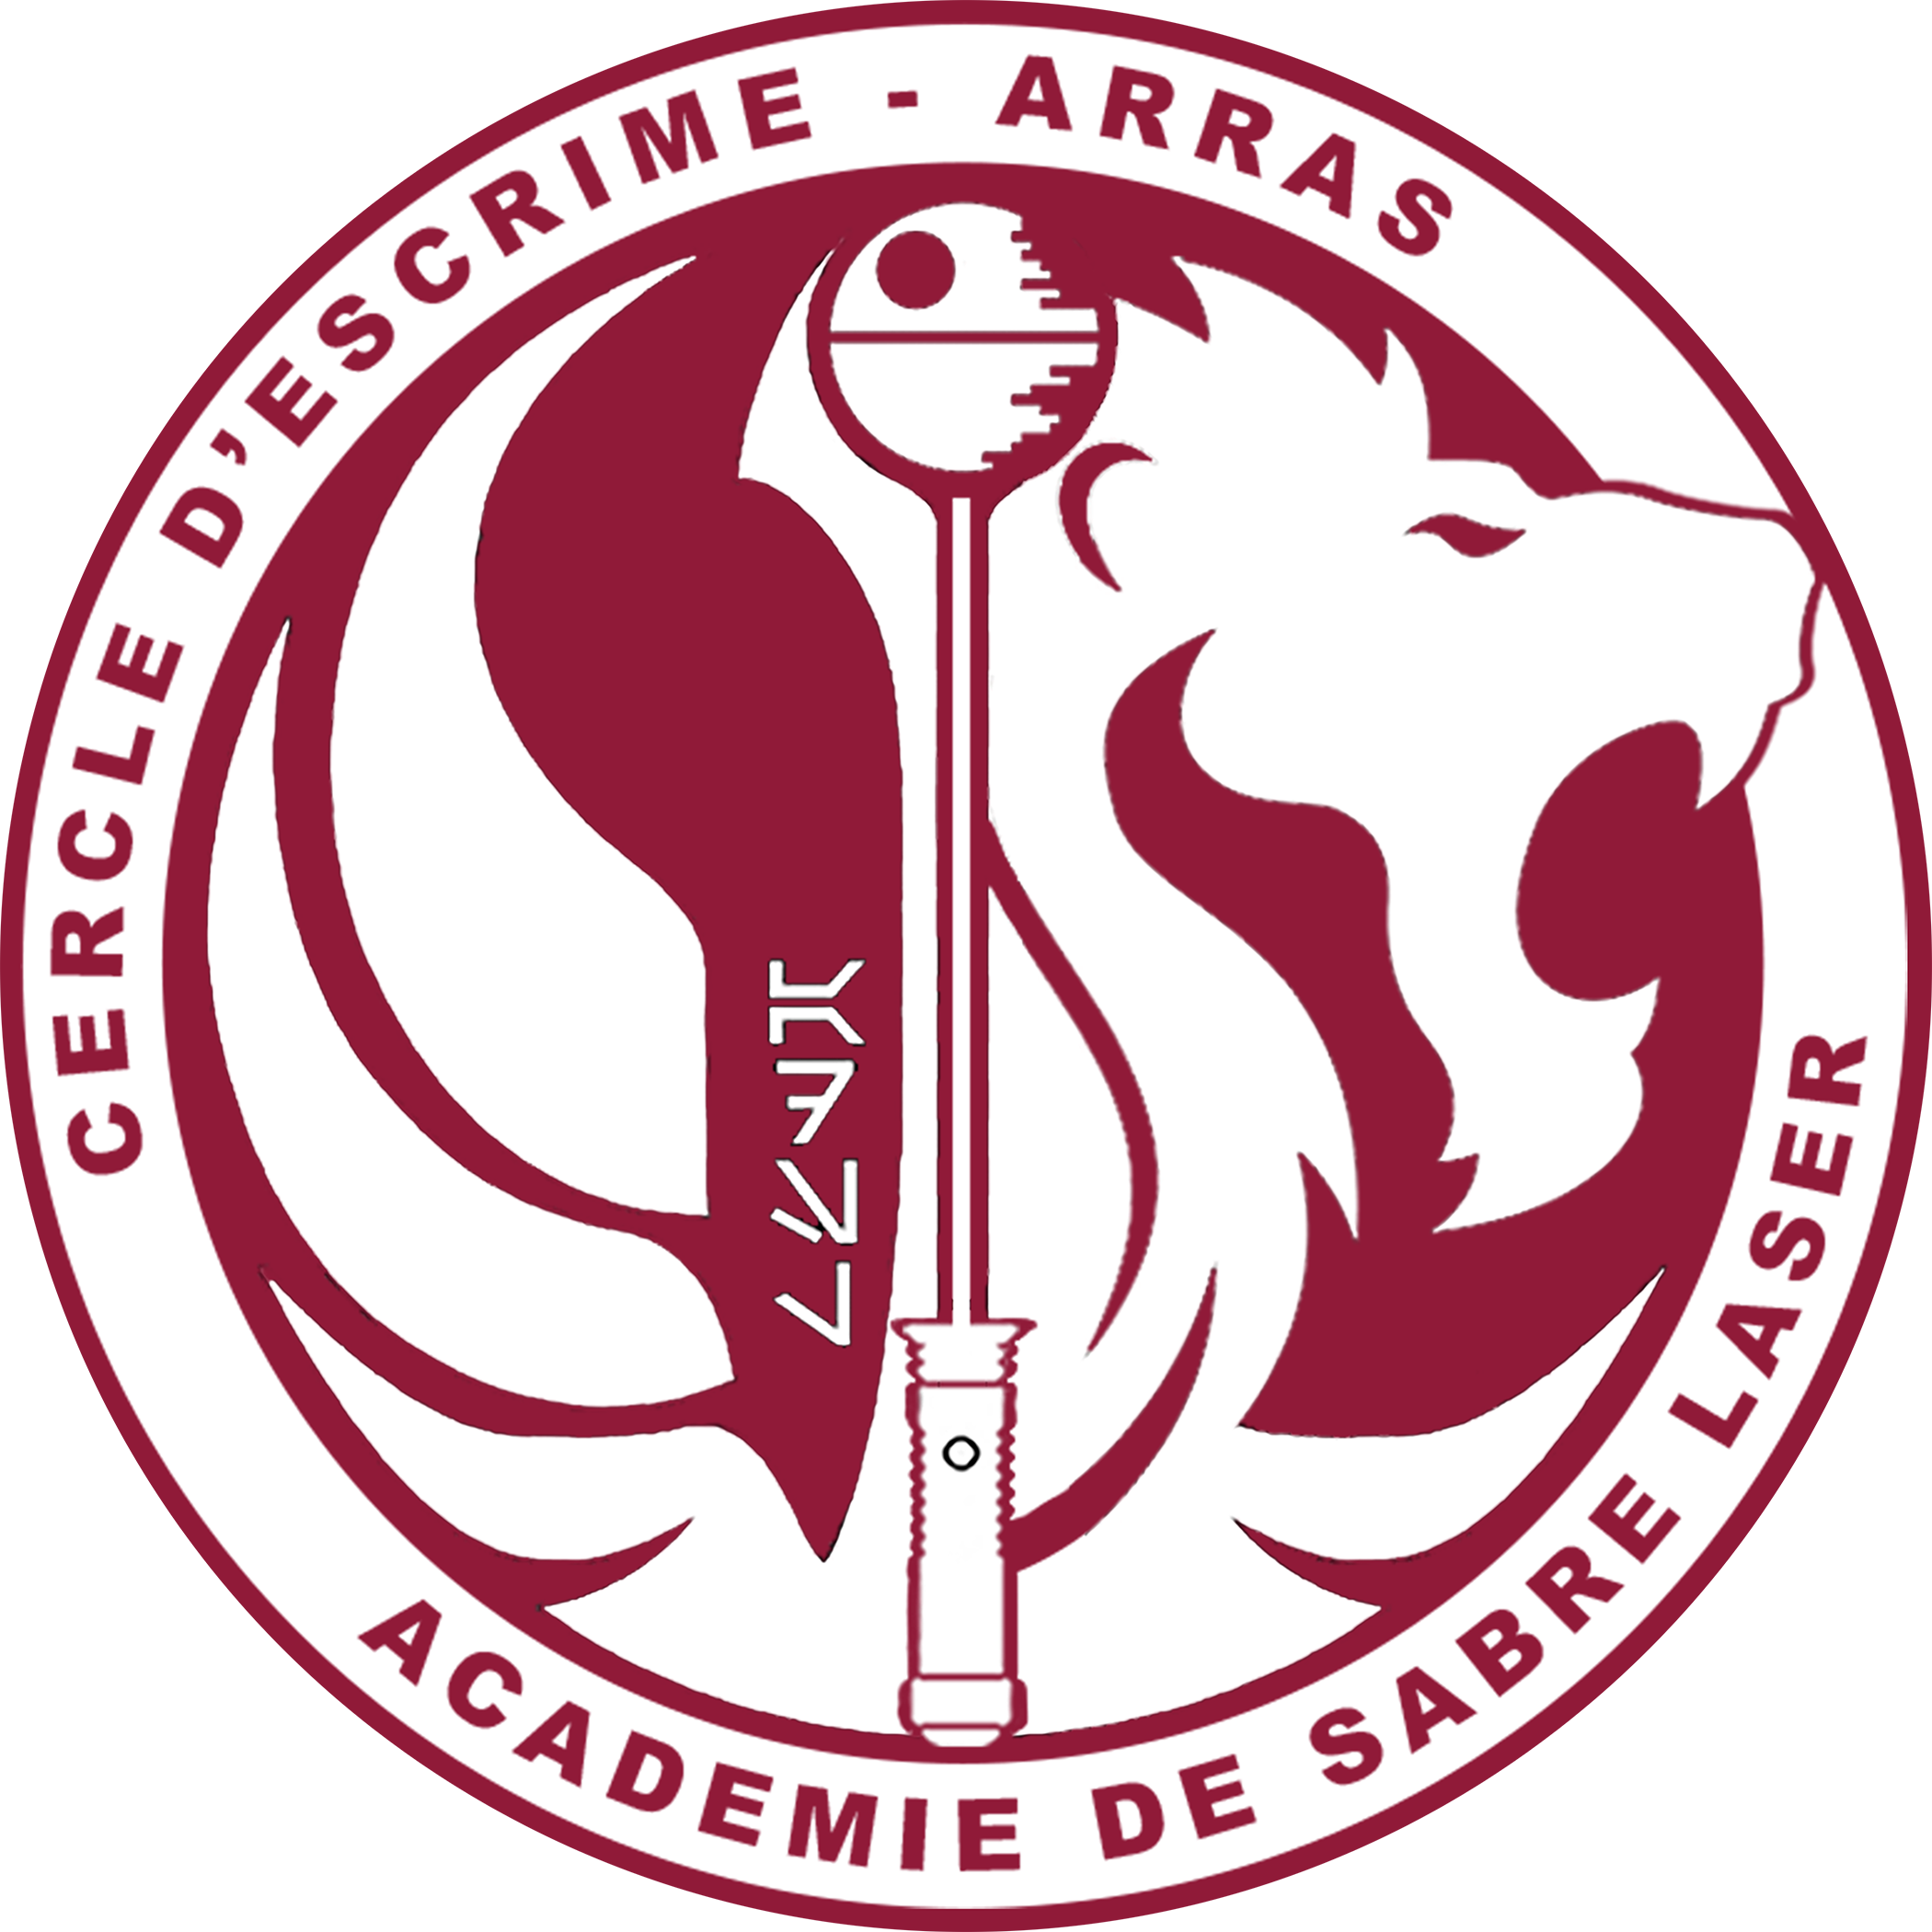 Cercle d’Escrime d’Arras – Académie de Sabre Laser